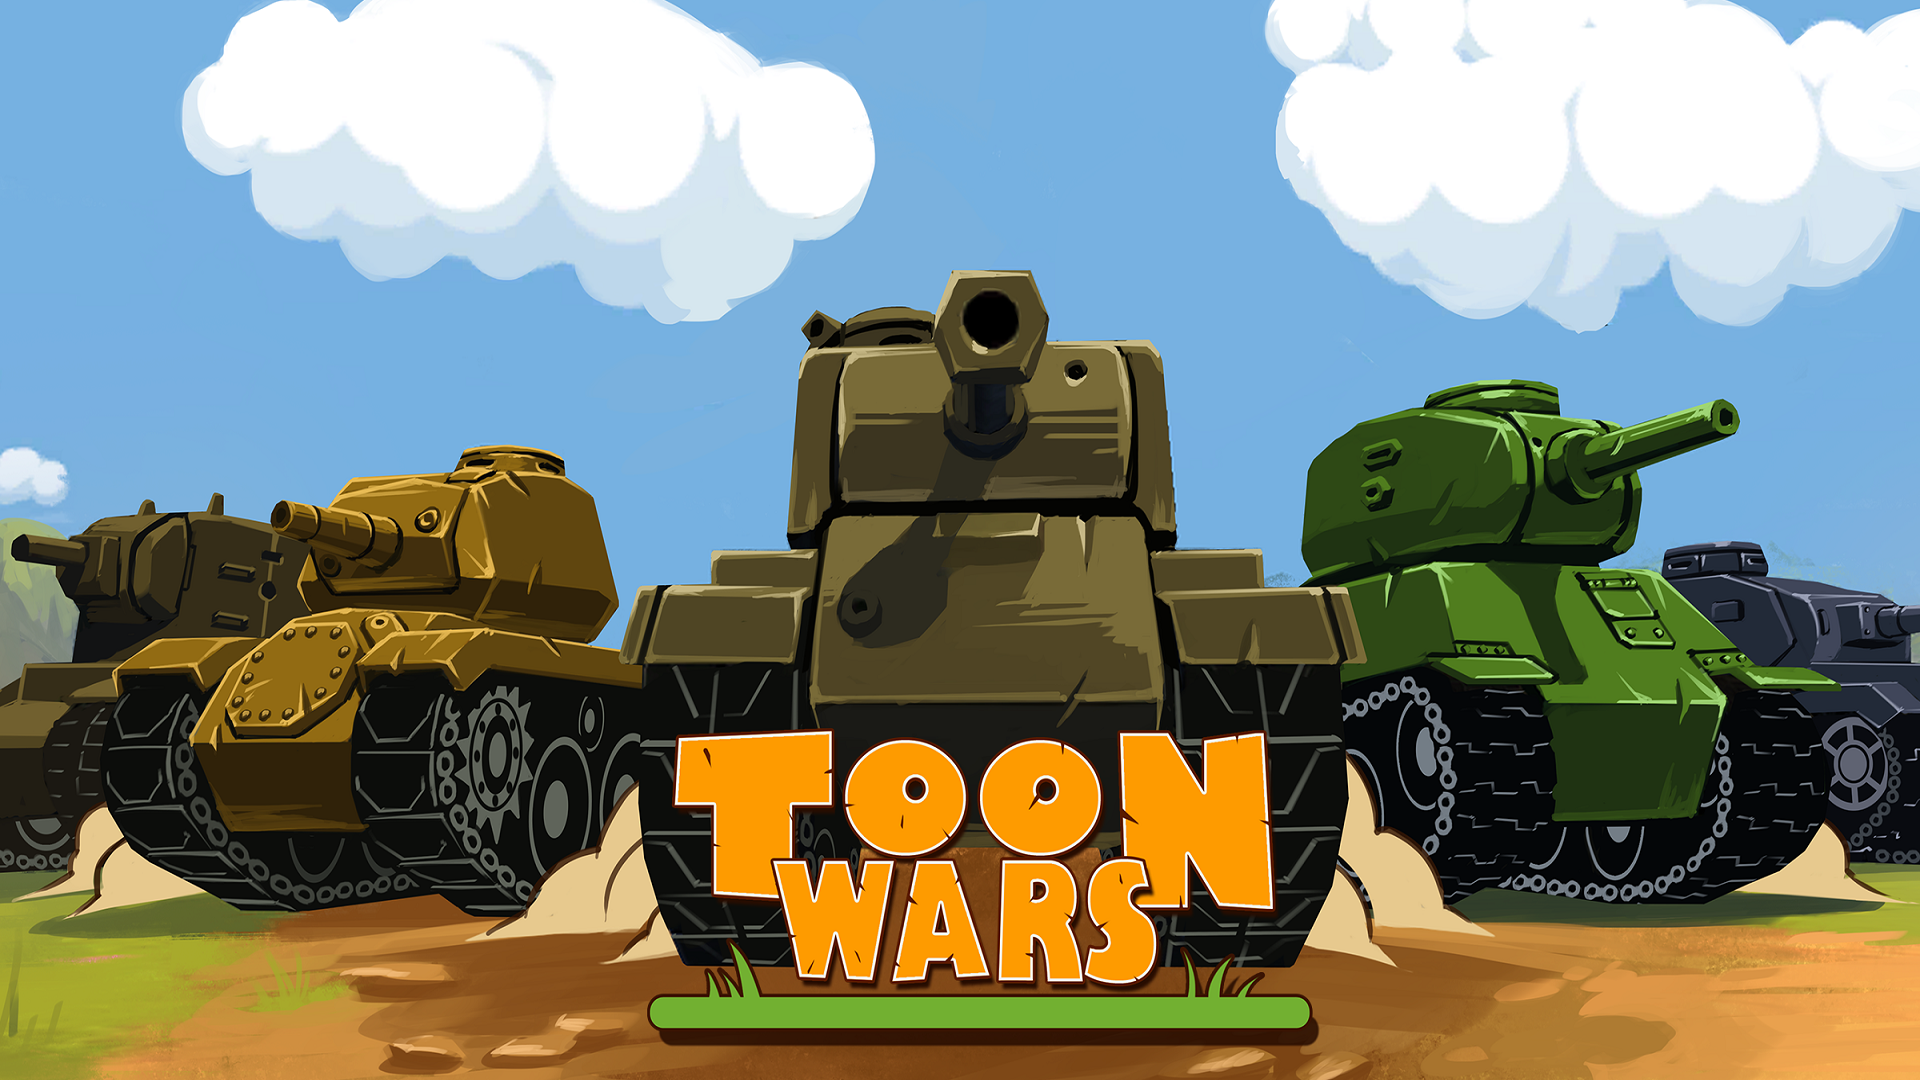 Screenshot 1 of Toon Wars: เกมรถถังสุดเจ๋ง 3.63.3